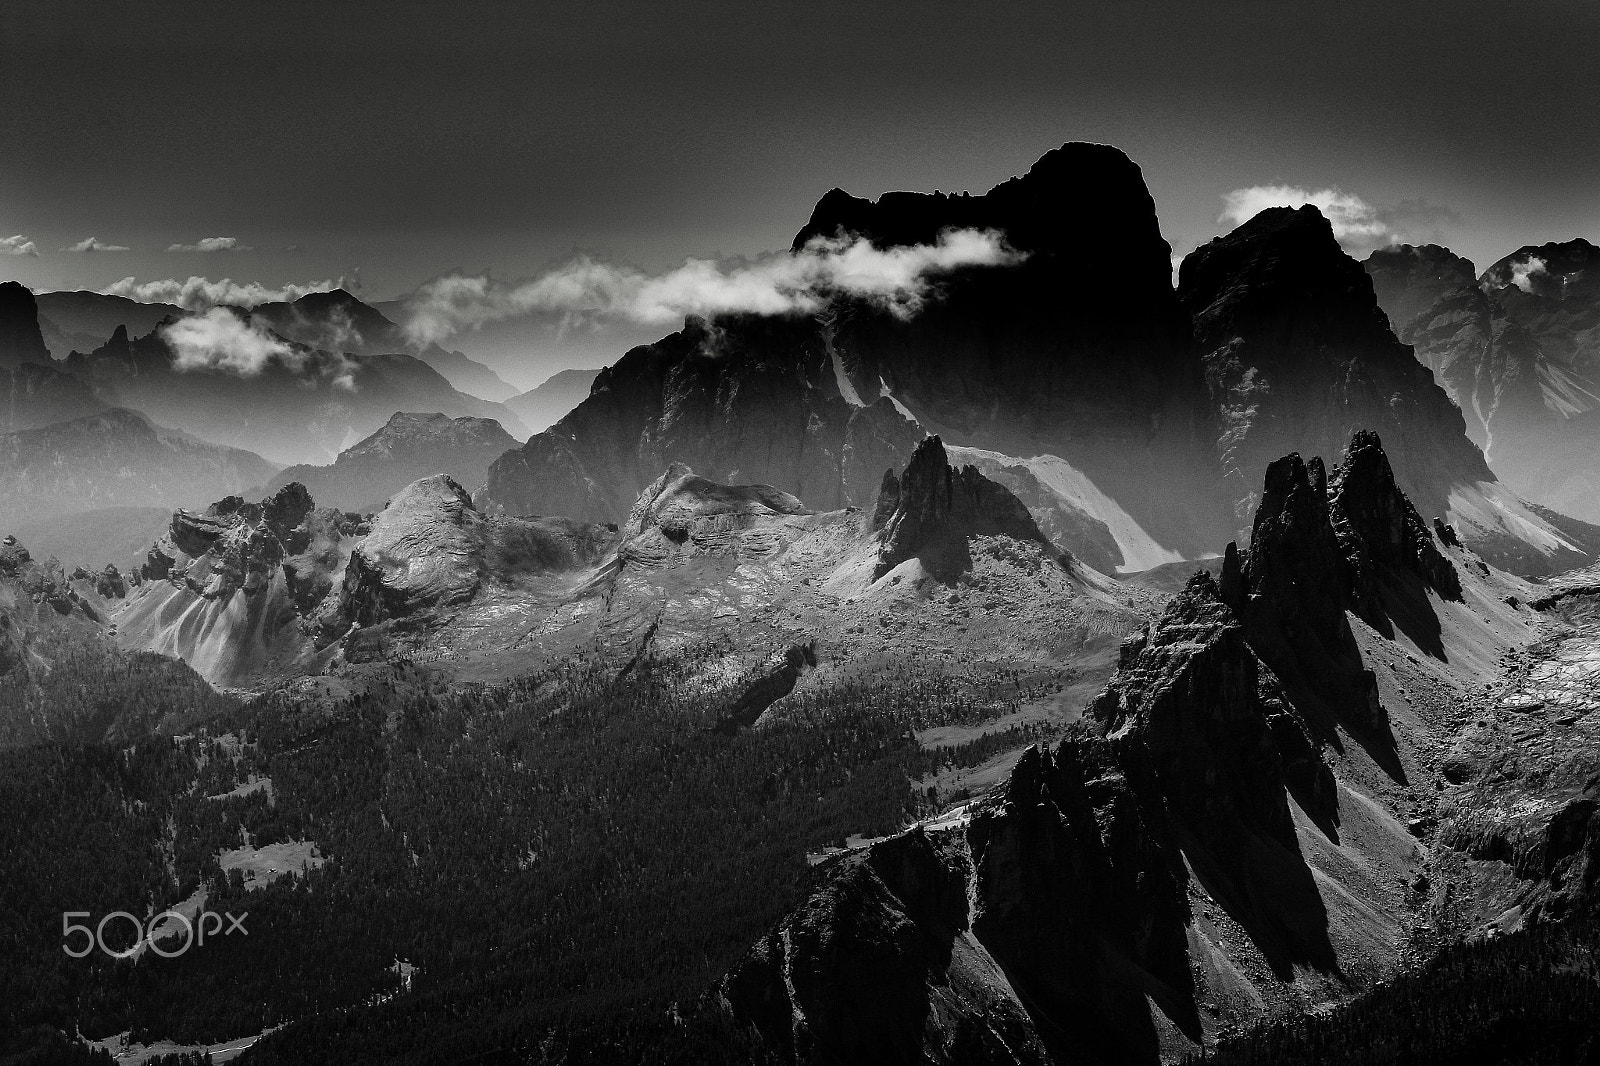 Canon EOS 600D (Rebel EOS T3i / EOS Kiss X5) sample photo. Monte pelmo & rocchette mountains - dolomites - italy  photography